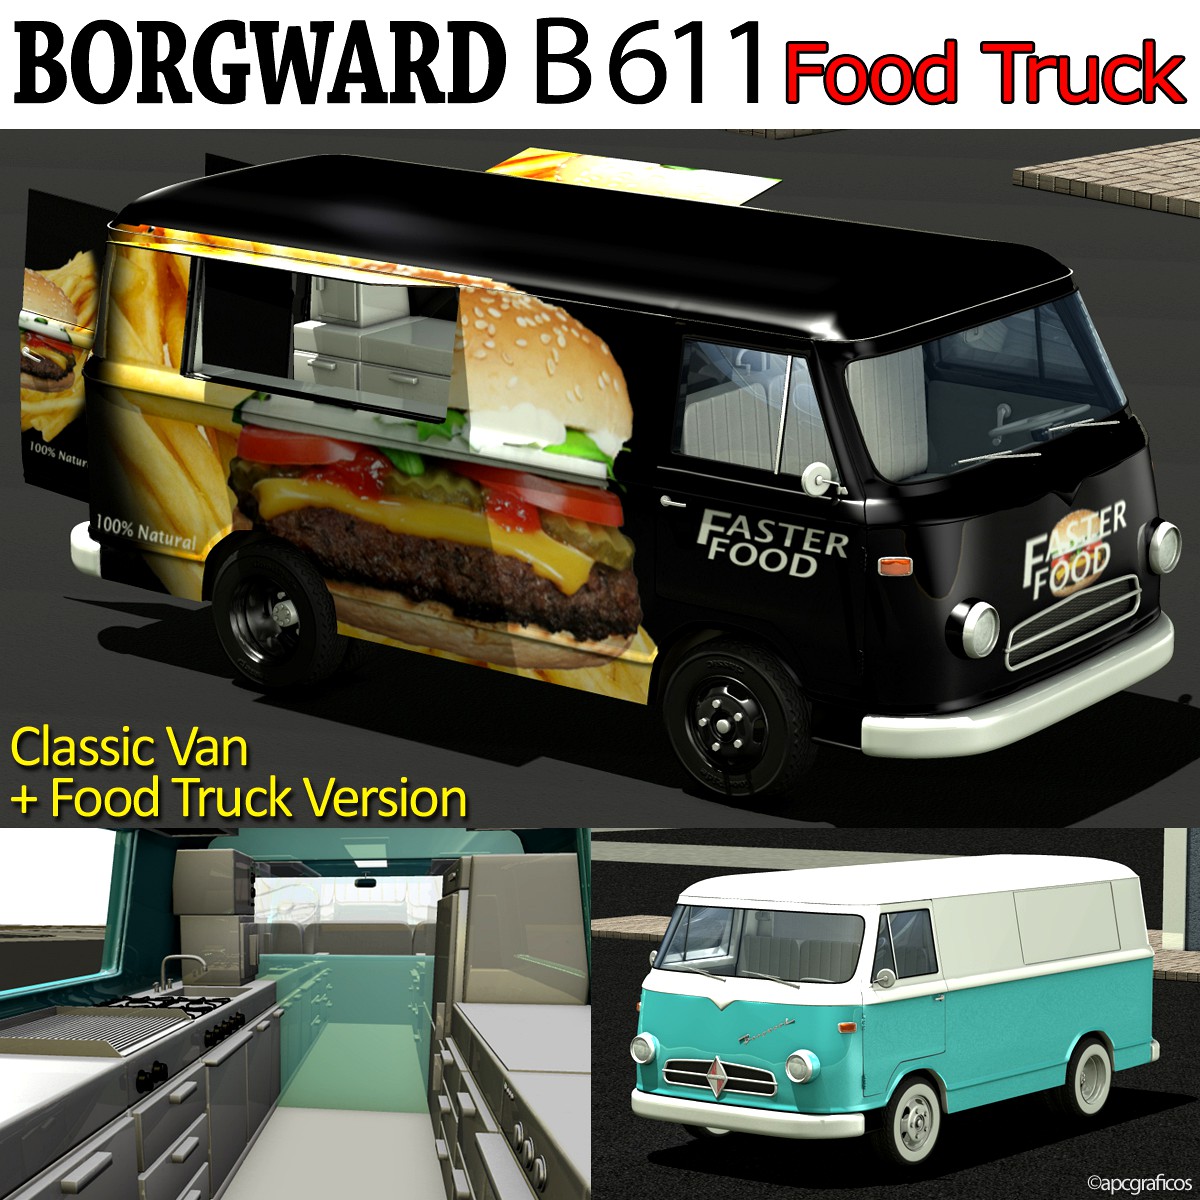 Borgward B 611 Food Truck